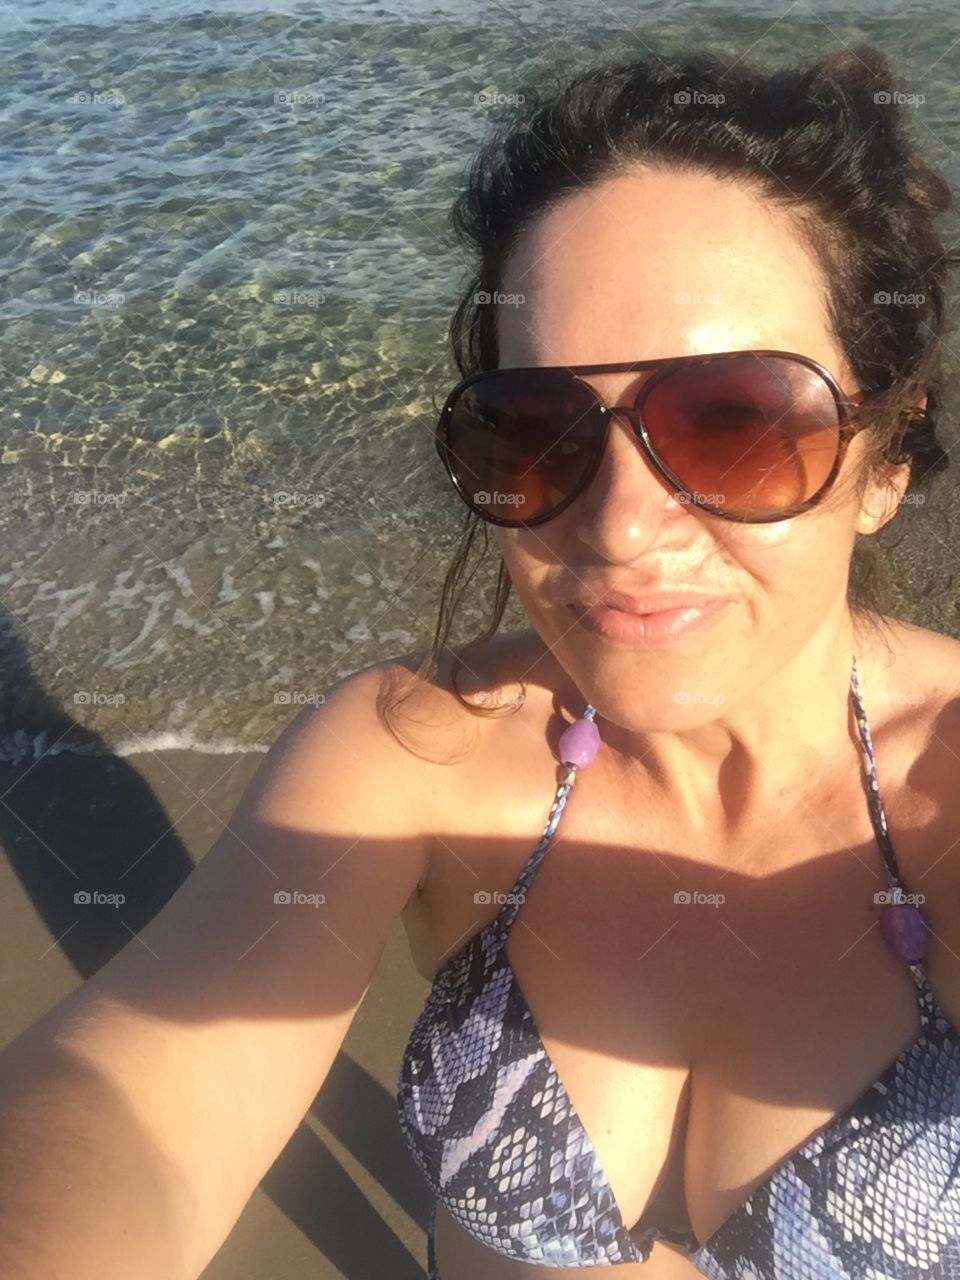 Woman beach selfie bikini